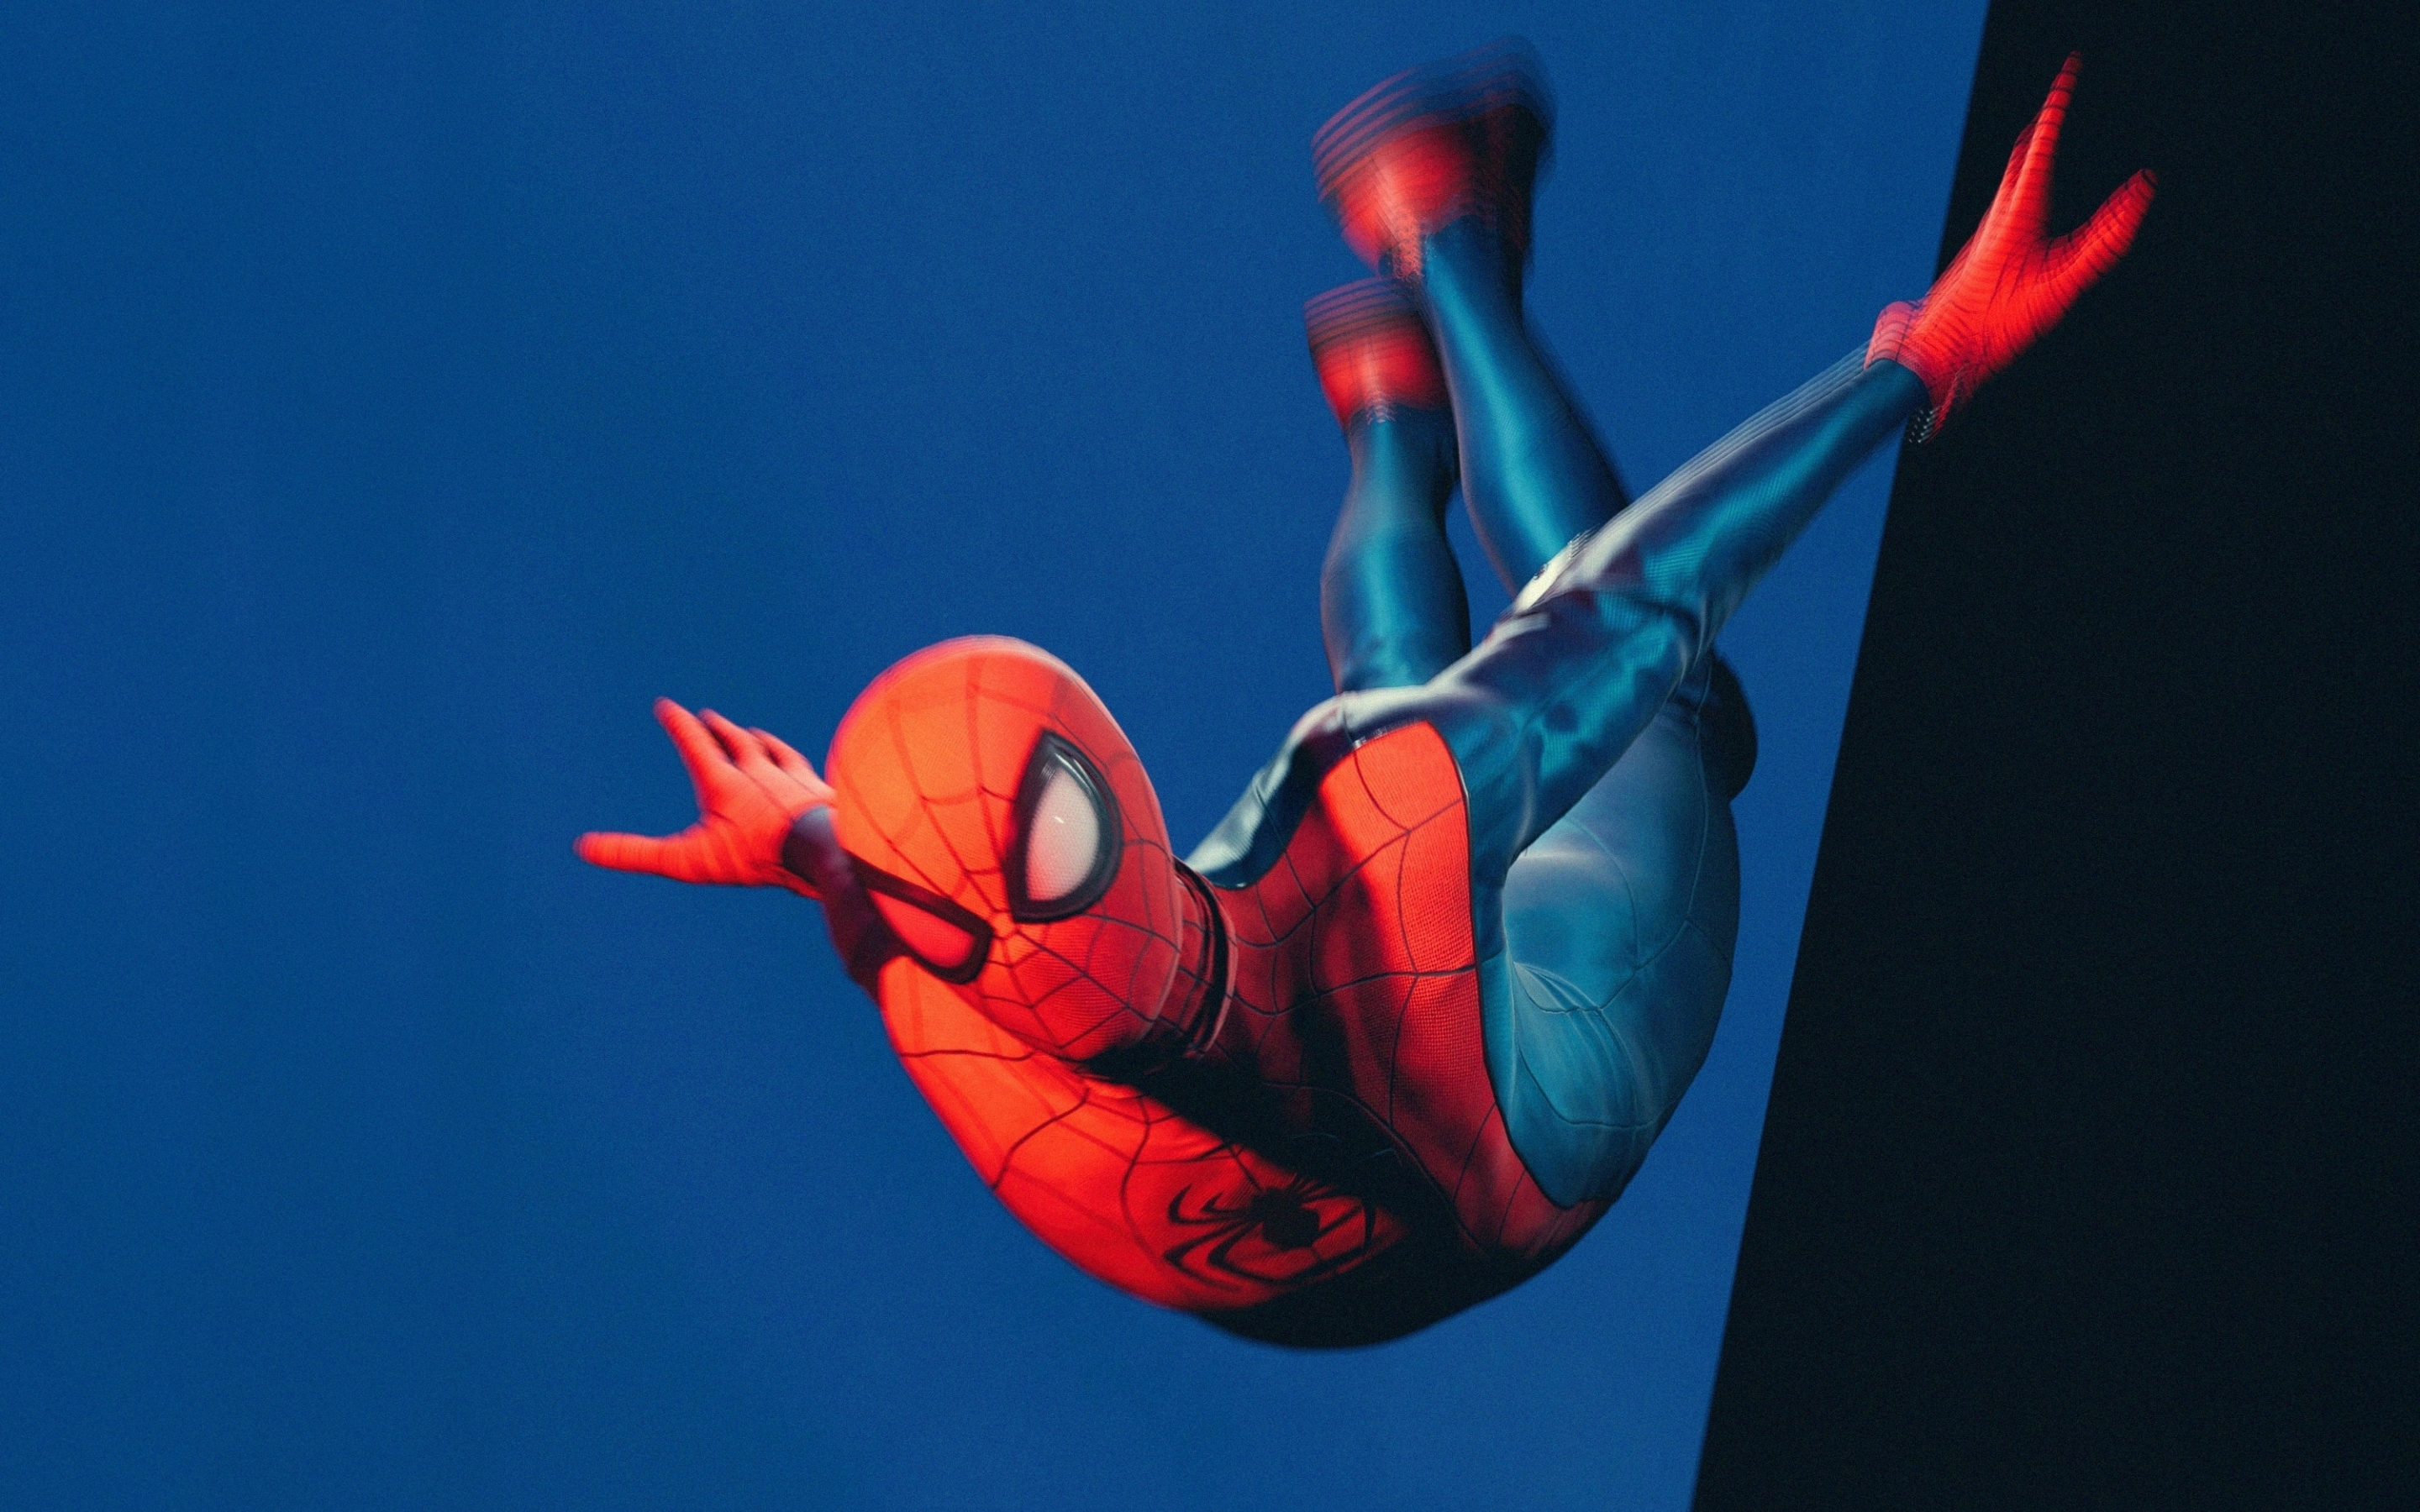 Marvel's spider-man, Miles Morales, jumping, fan art, 2880x1800 wallpaper